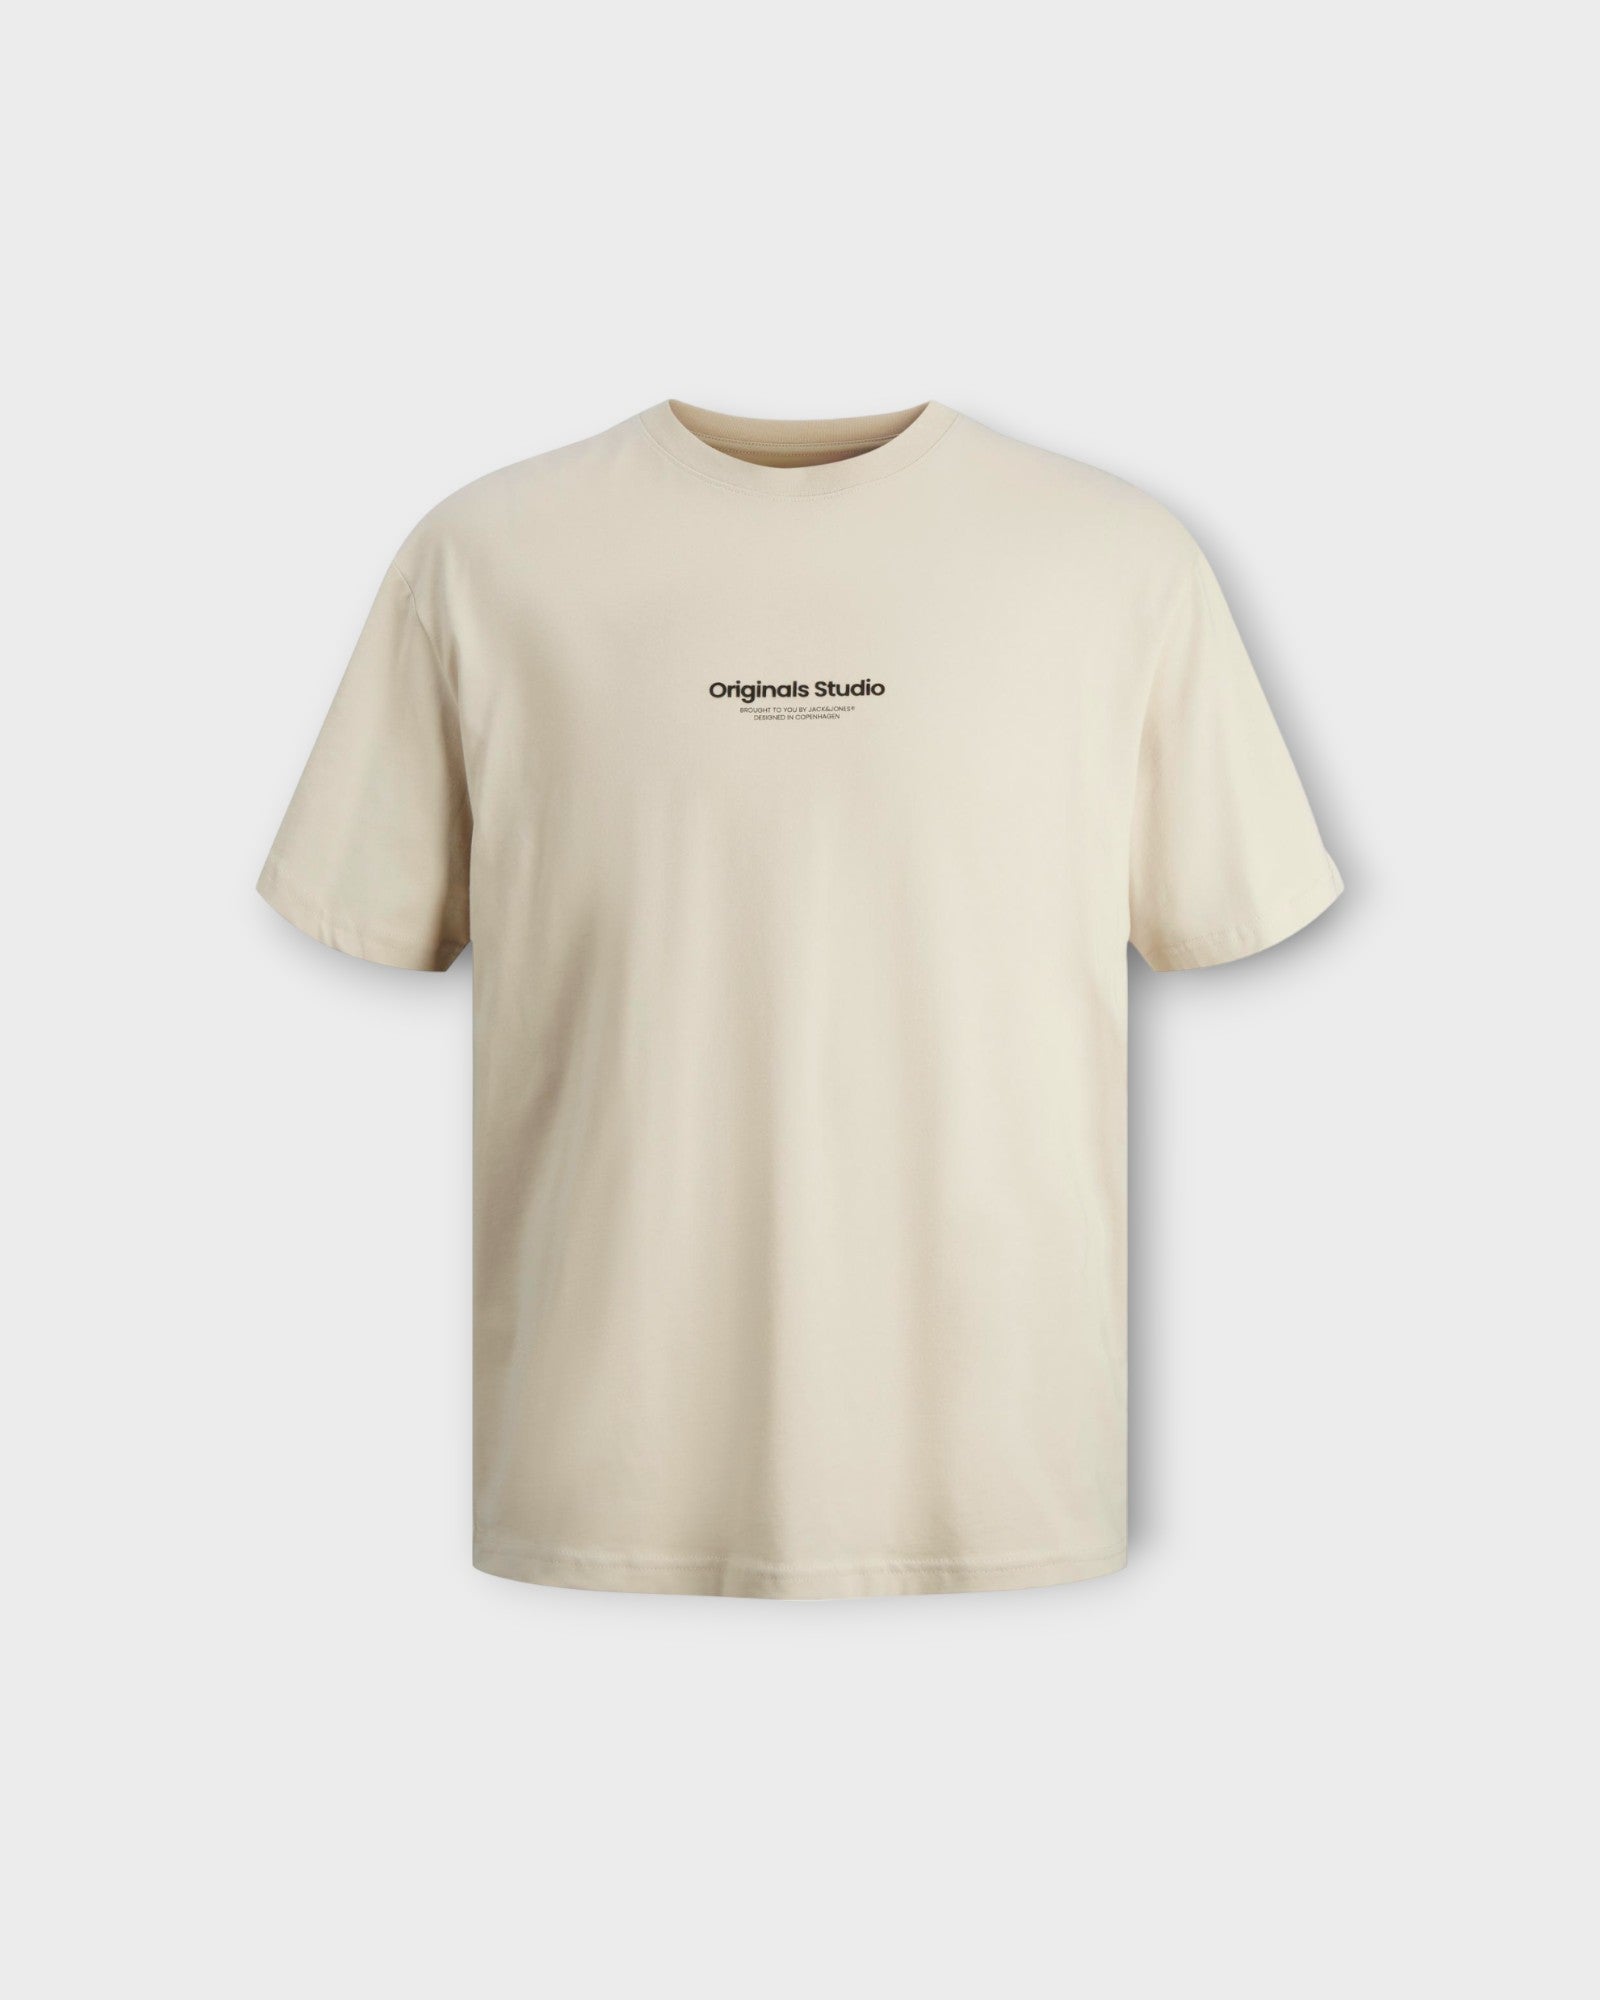 Vesterbro Tee Ss Crew Neck Moonbeam - Sandfarvet Jack & Jones T-shirt til mænd. Her set forfra.